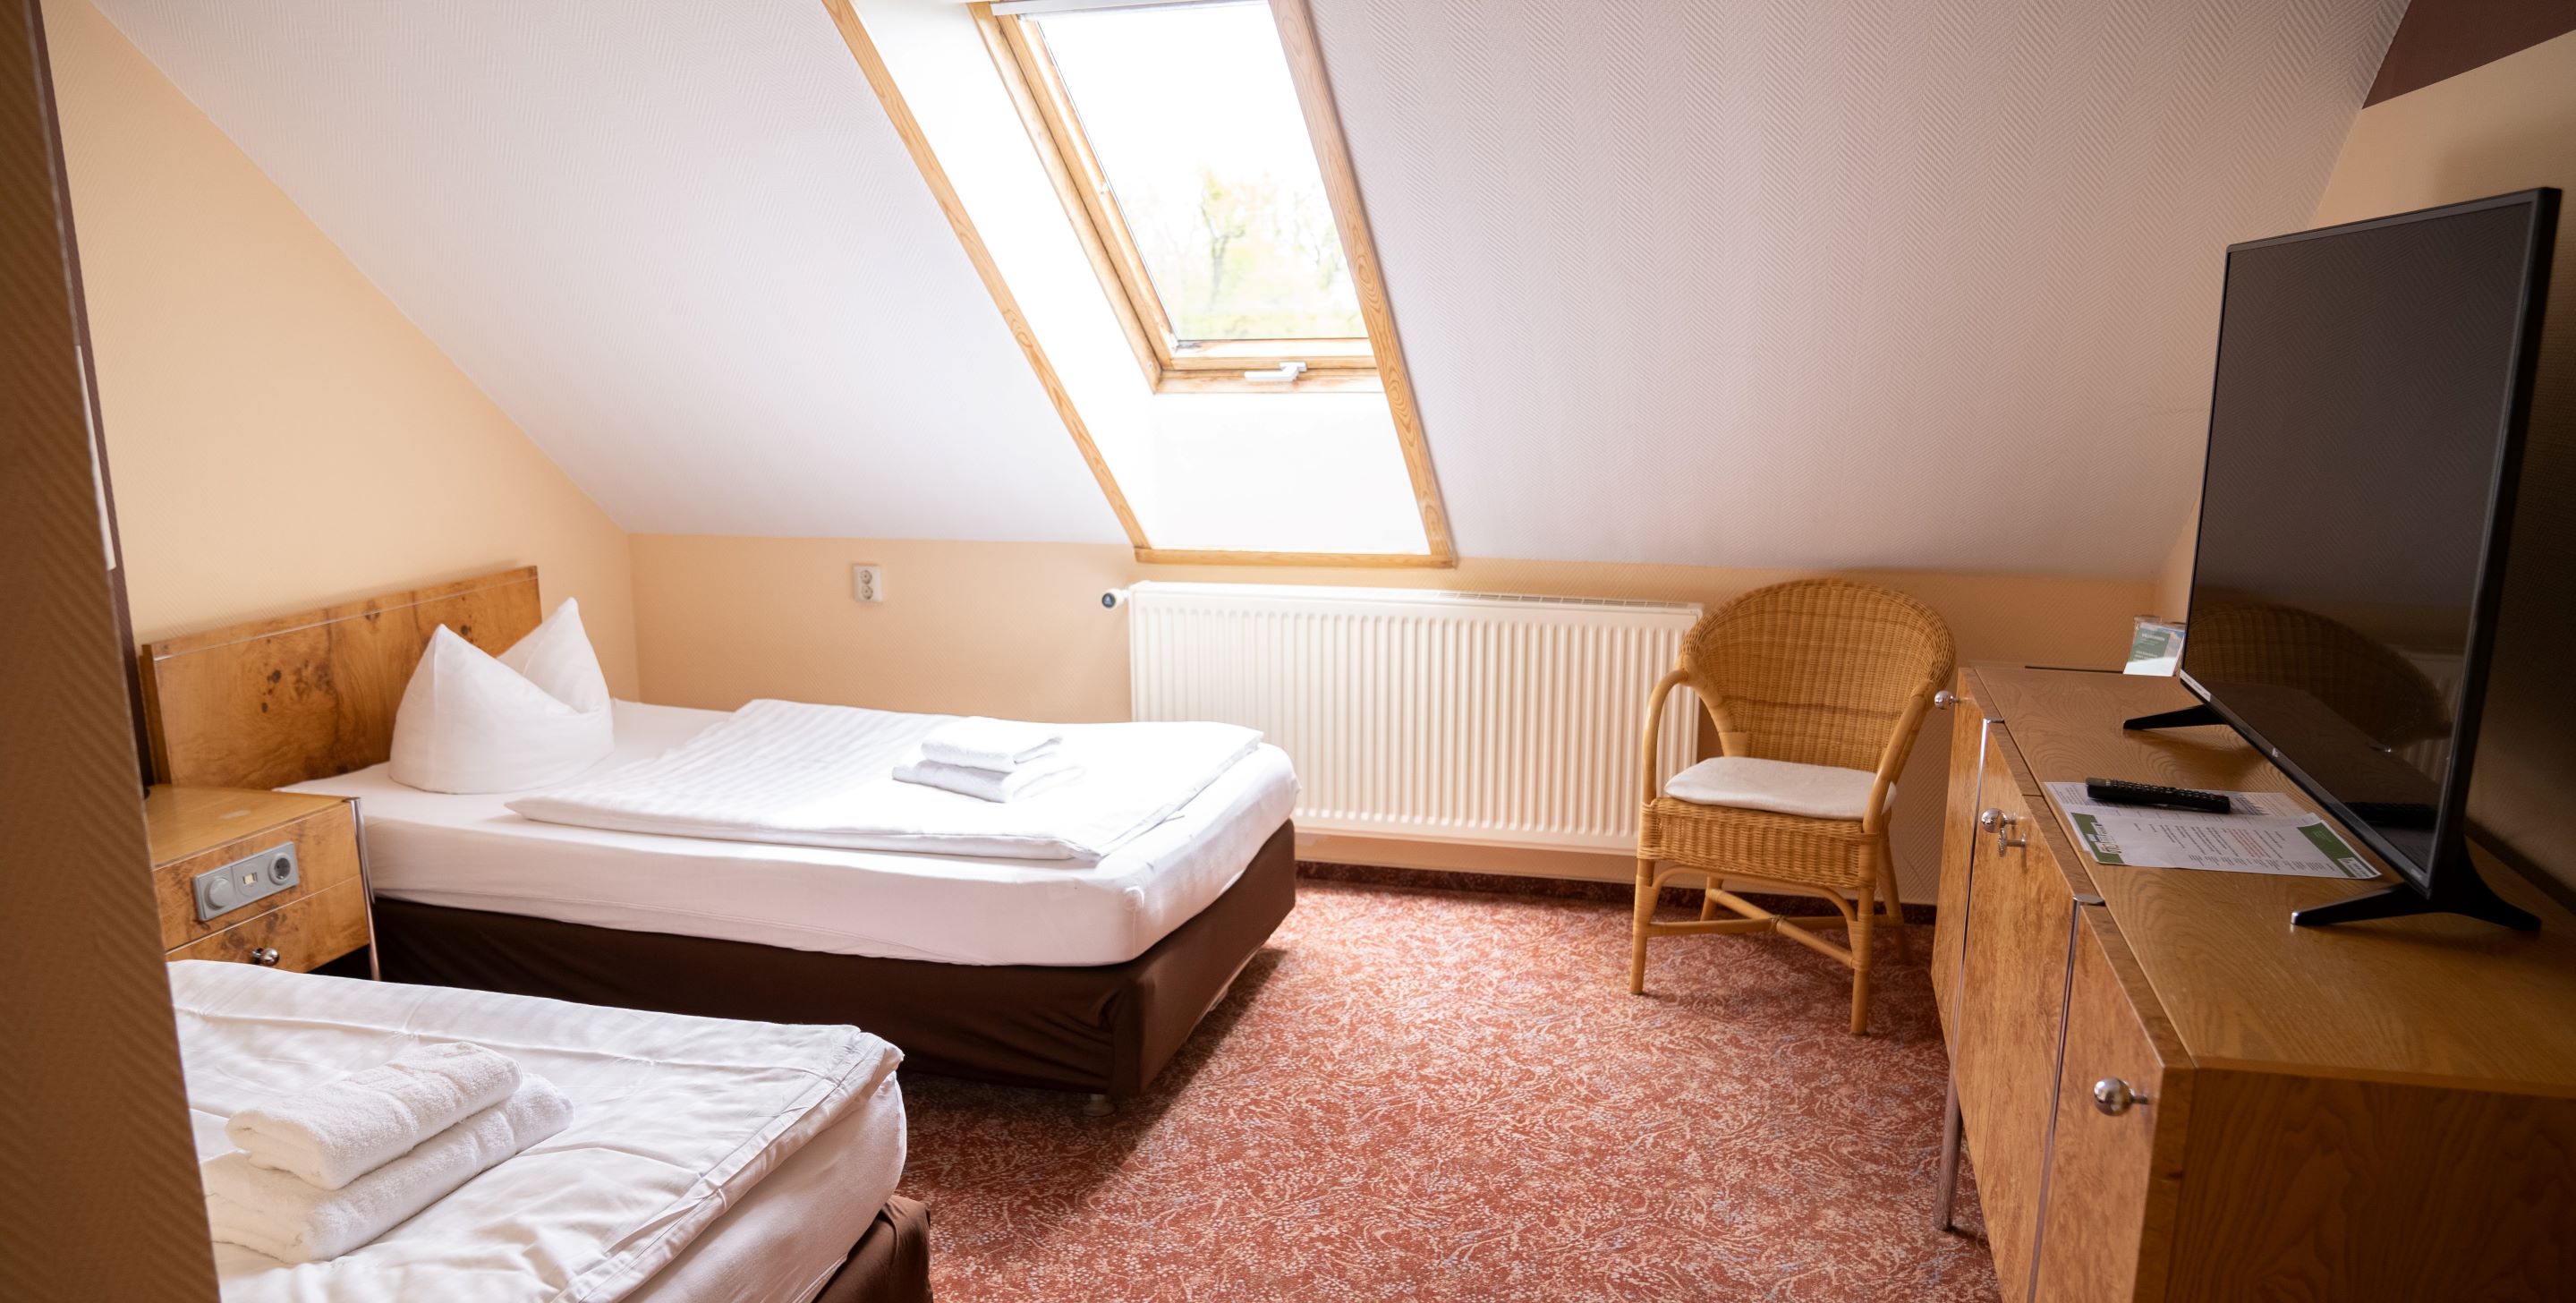 Zweibettzimmer, Foto: Marvin Schön , Lizenz: LD Eevnt GmbH c/o Hotel am Uckersee